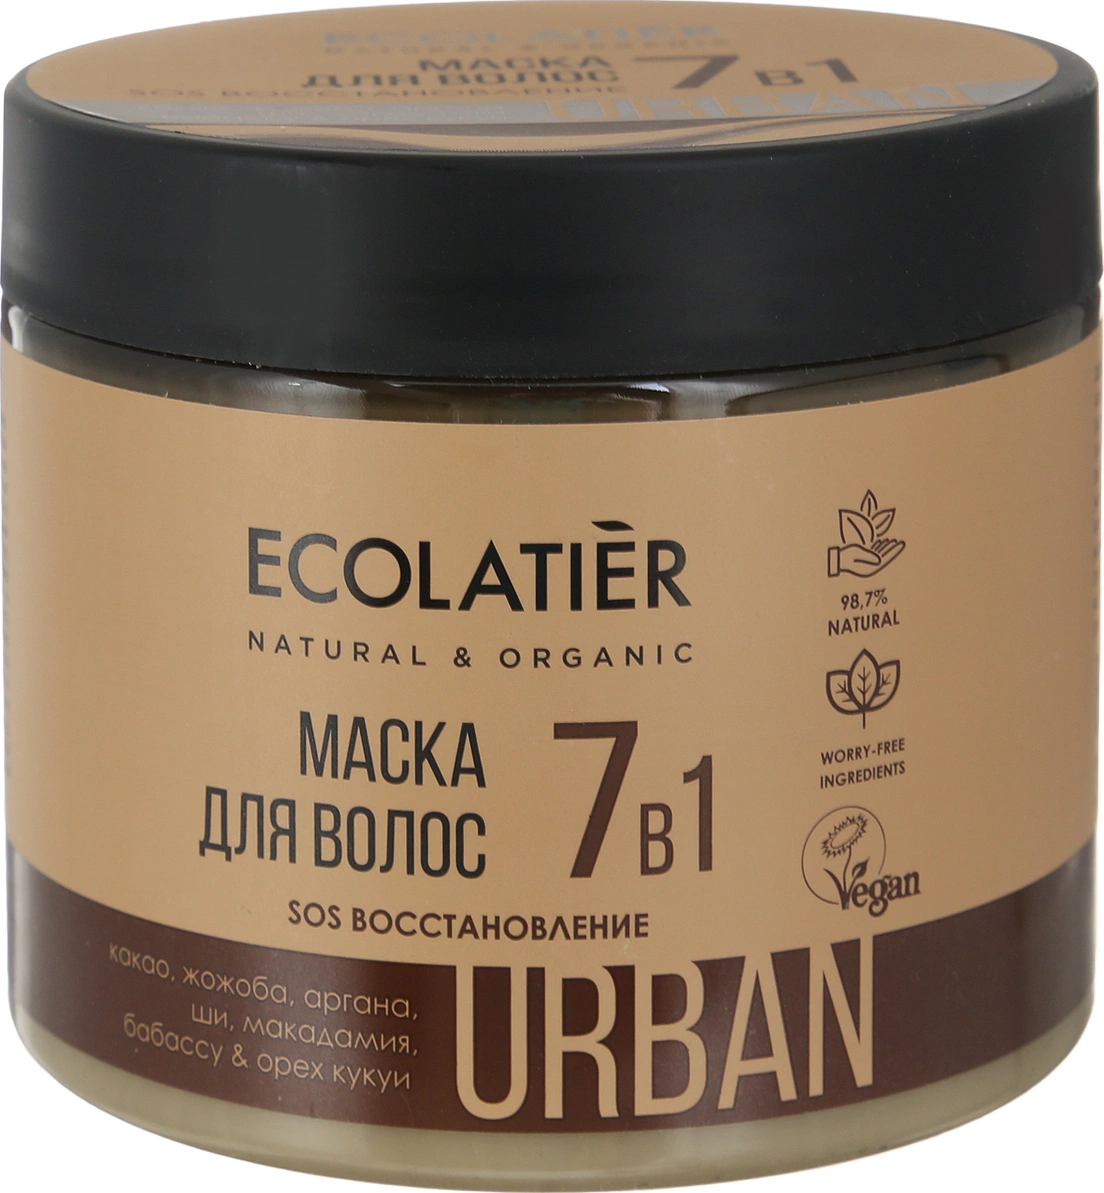 Ecolatier маска для волос. Маска для волос ecolatier SOS восстановление 7 в 1 какао & жожоба , 380 мл. Ecolatier маска 7 в 1. Маска для волос 7 в 1 ecolatier.